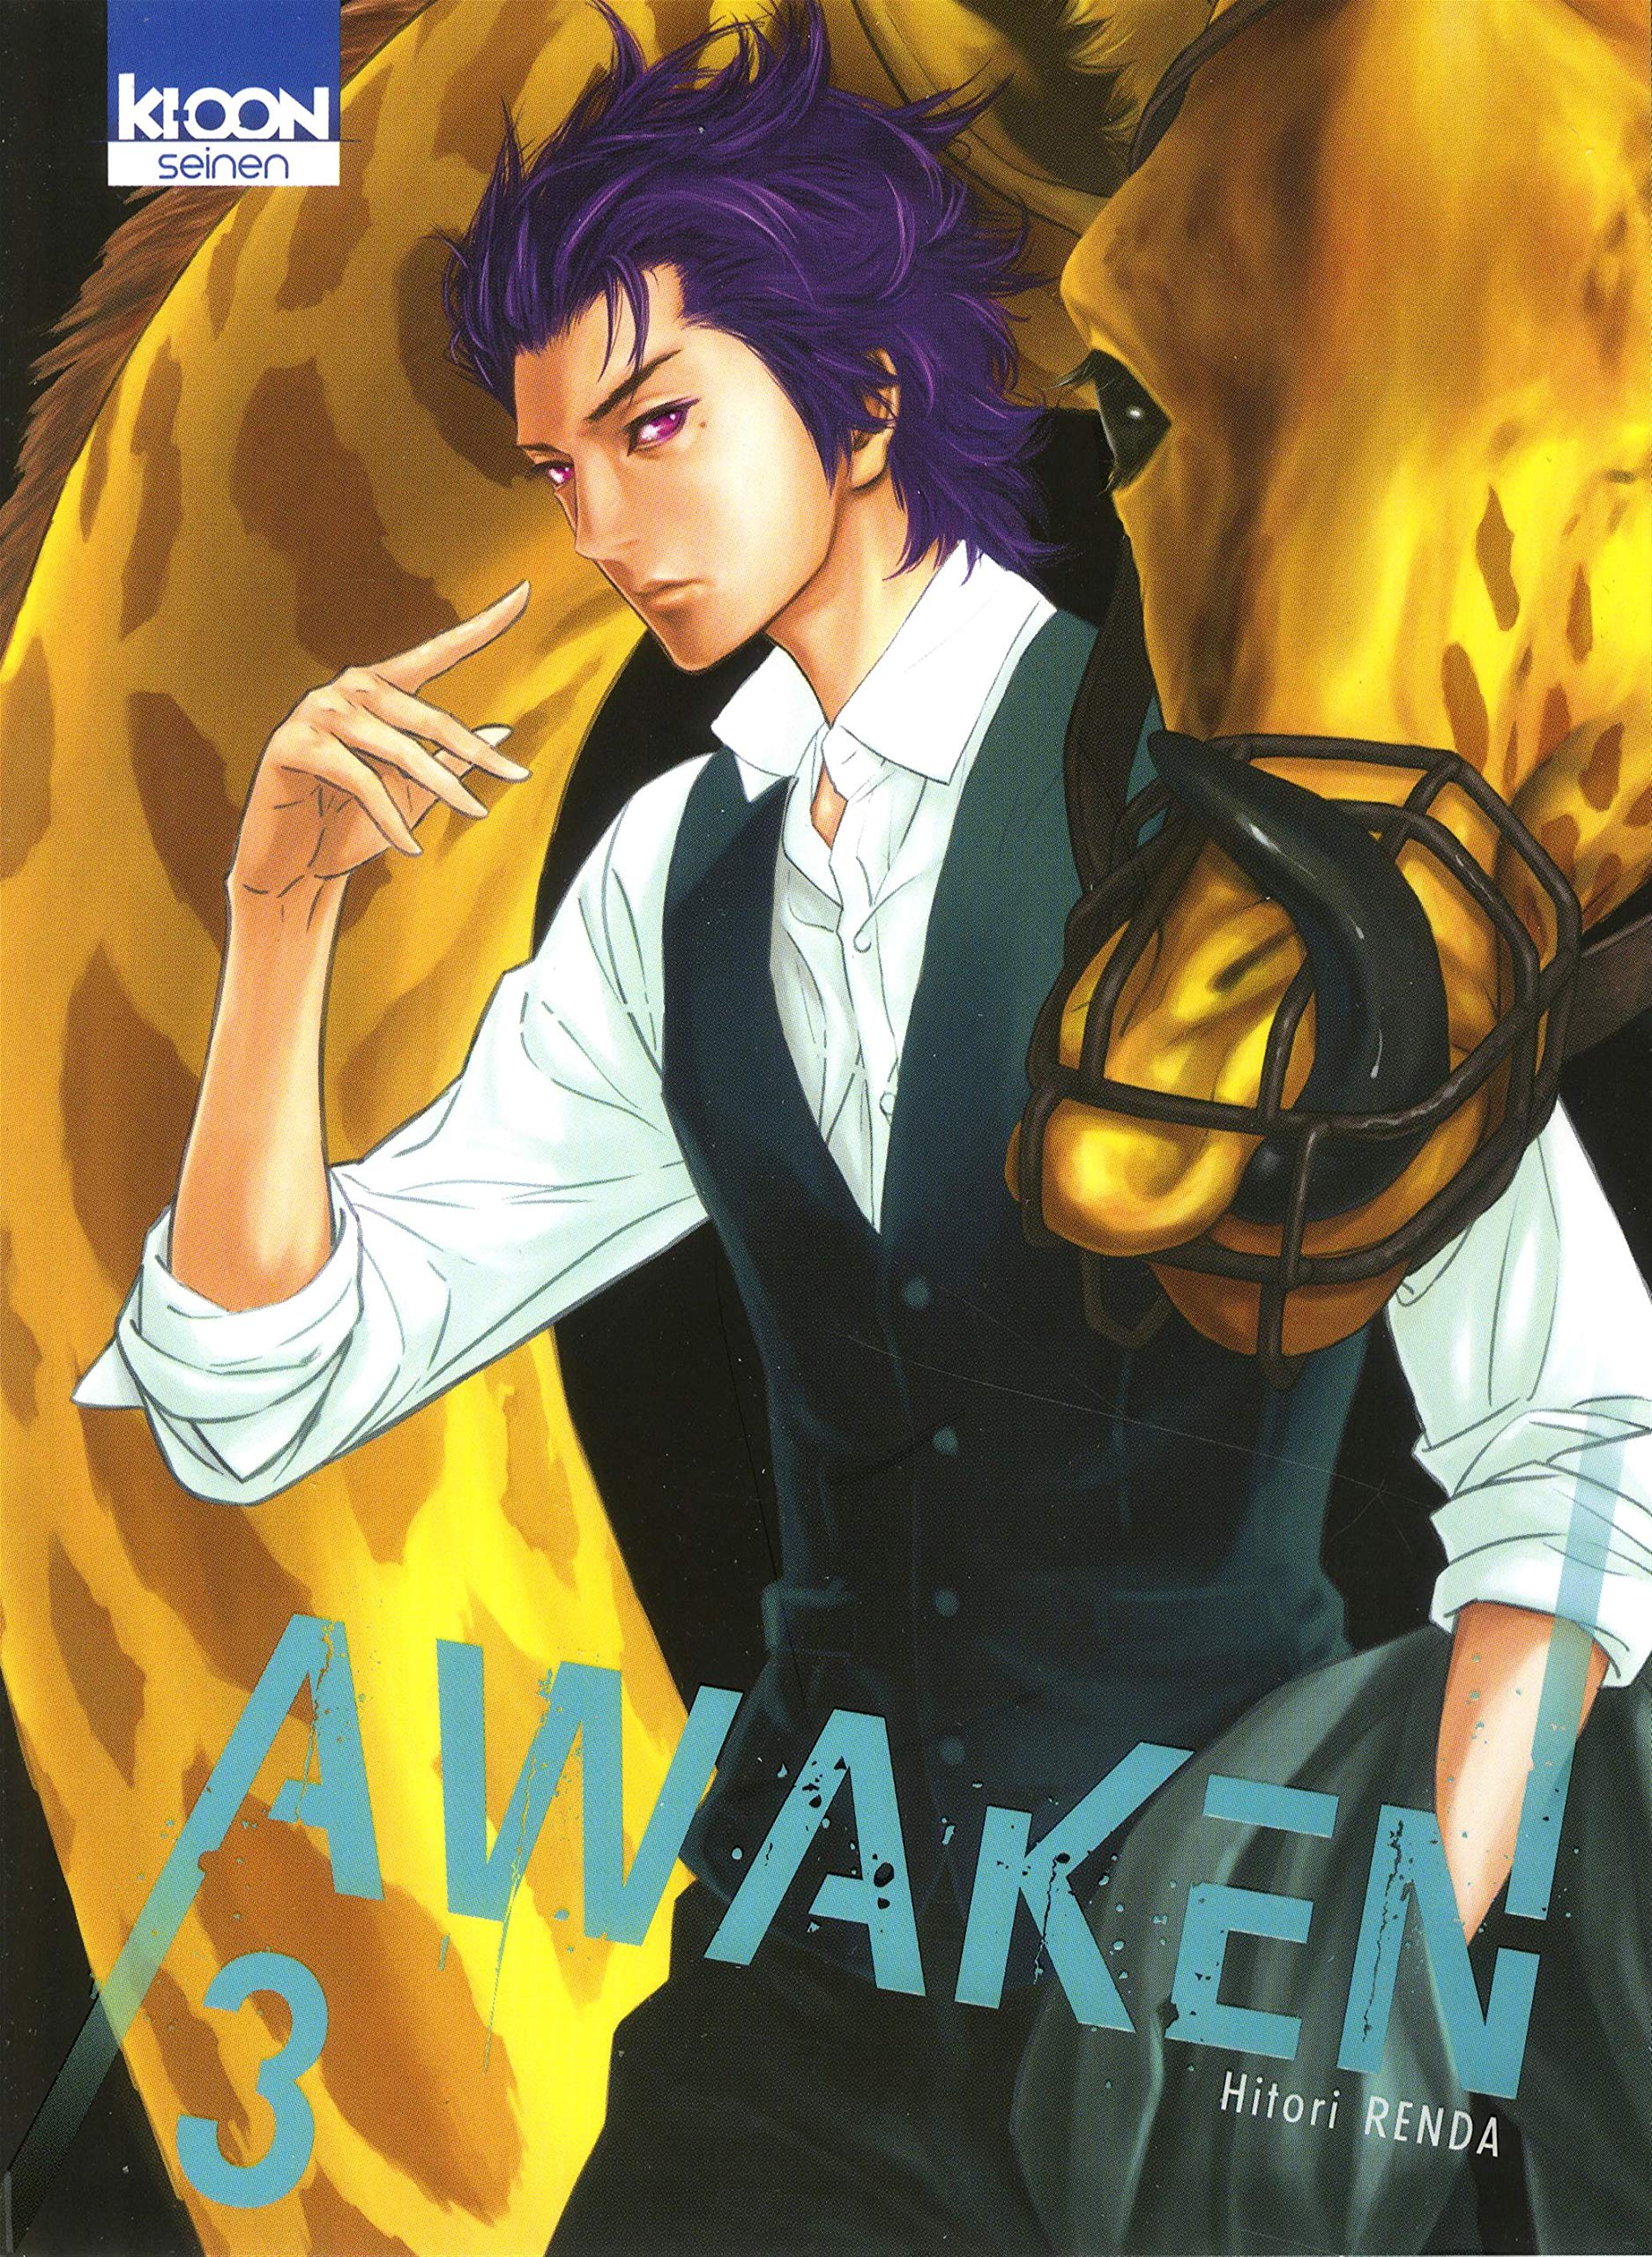 Awaken - Tome 3